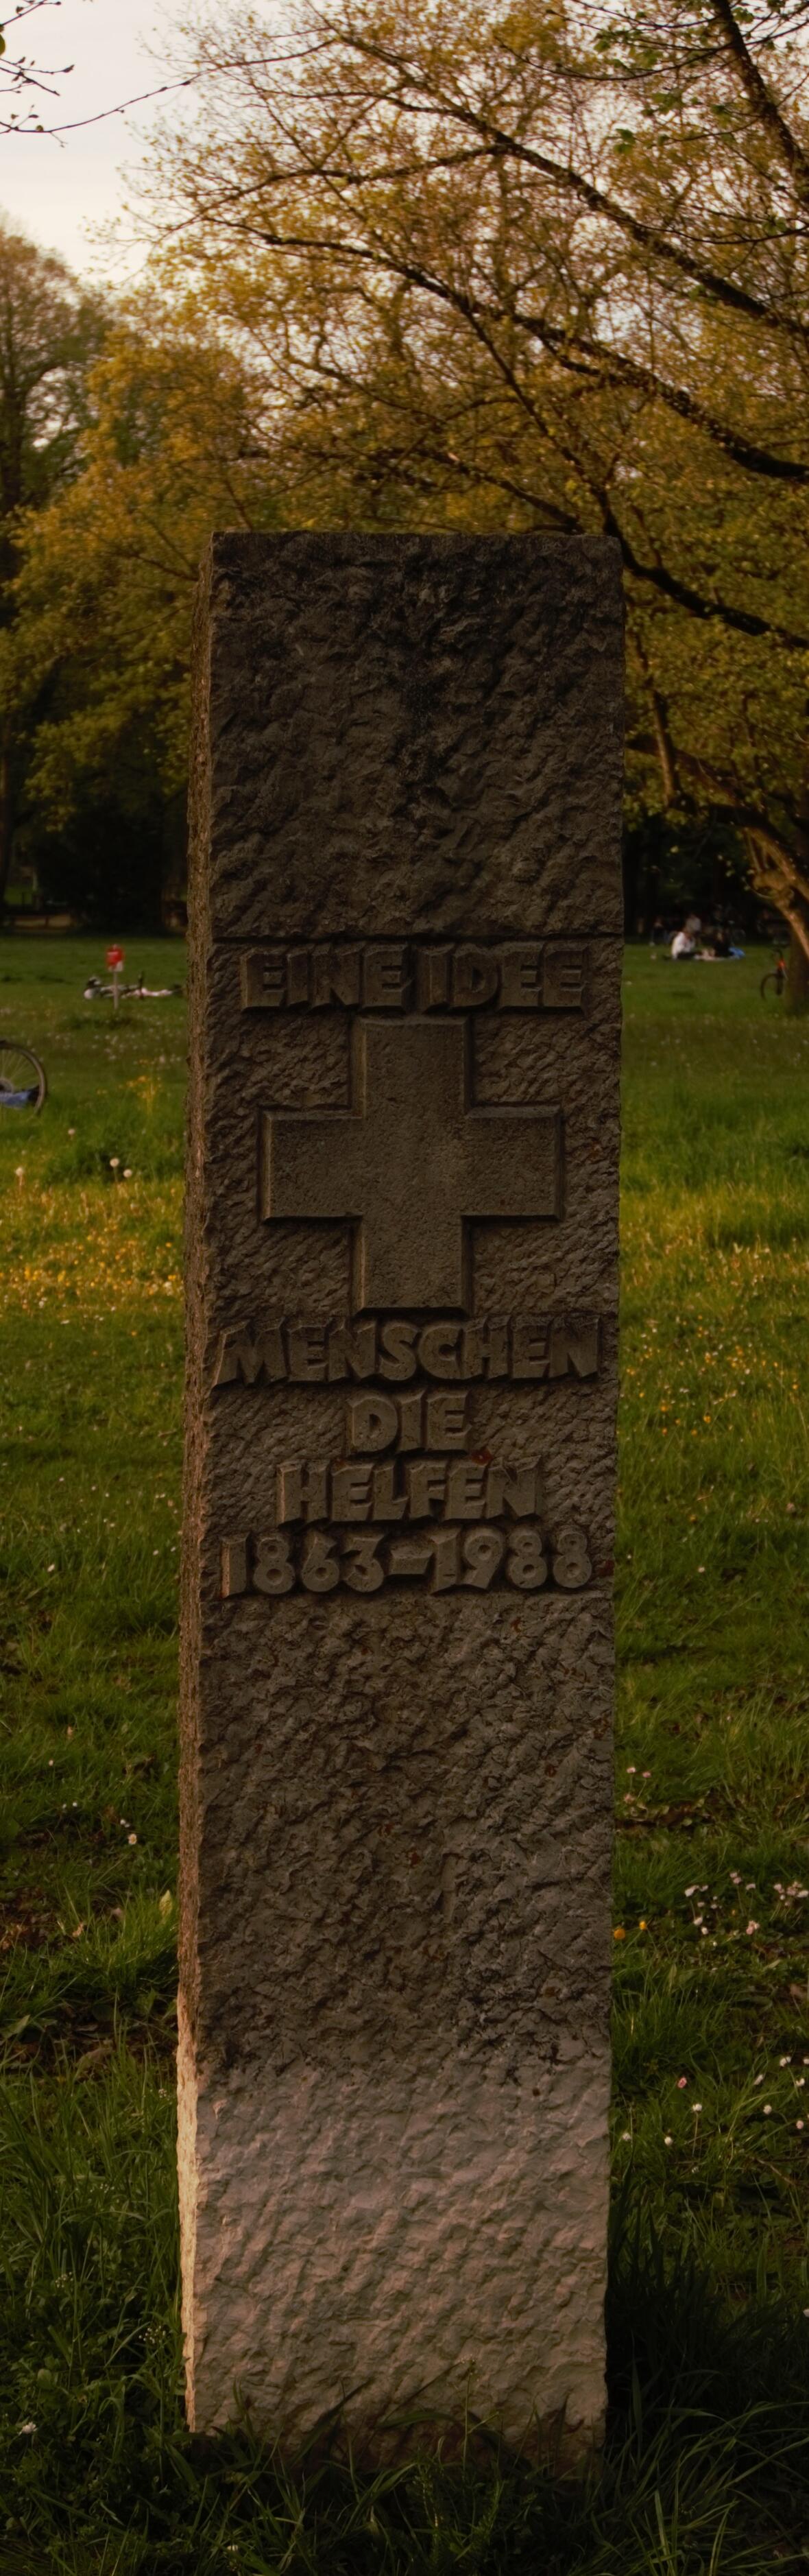 Der Rot-Kreuz-Stein steht im Wittelsbacher Park nahe Ecke Imhof-/Moltkestraße